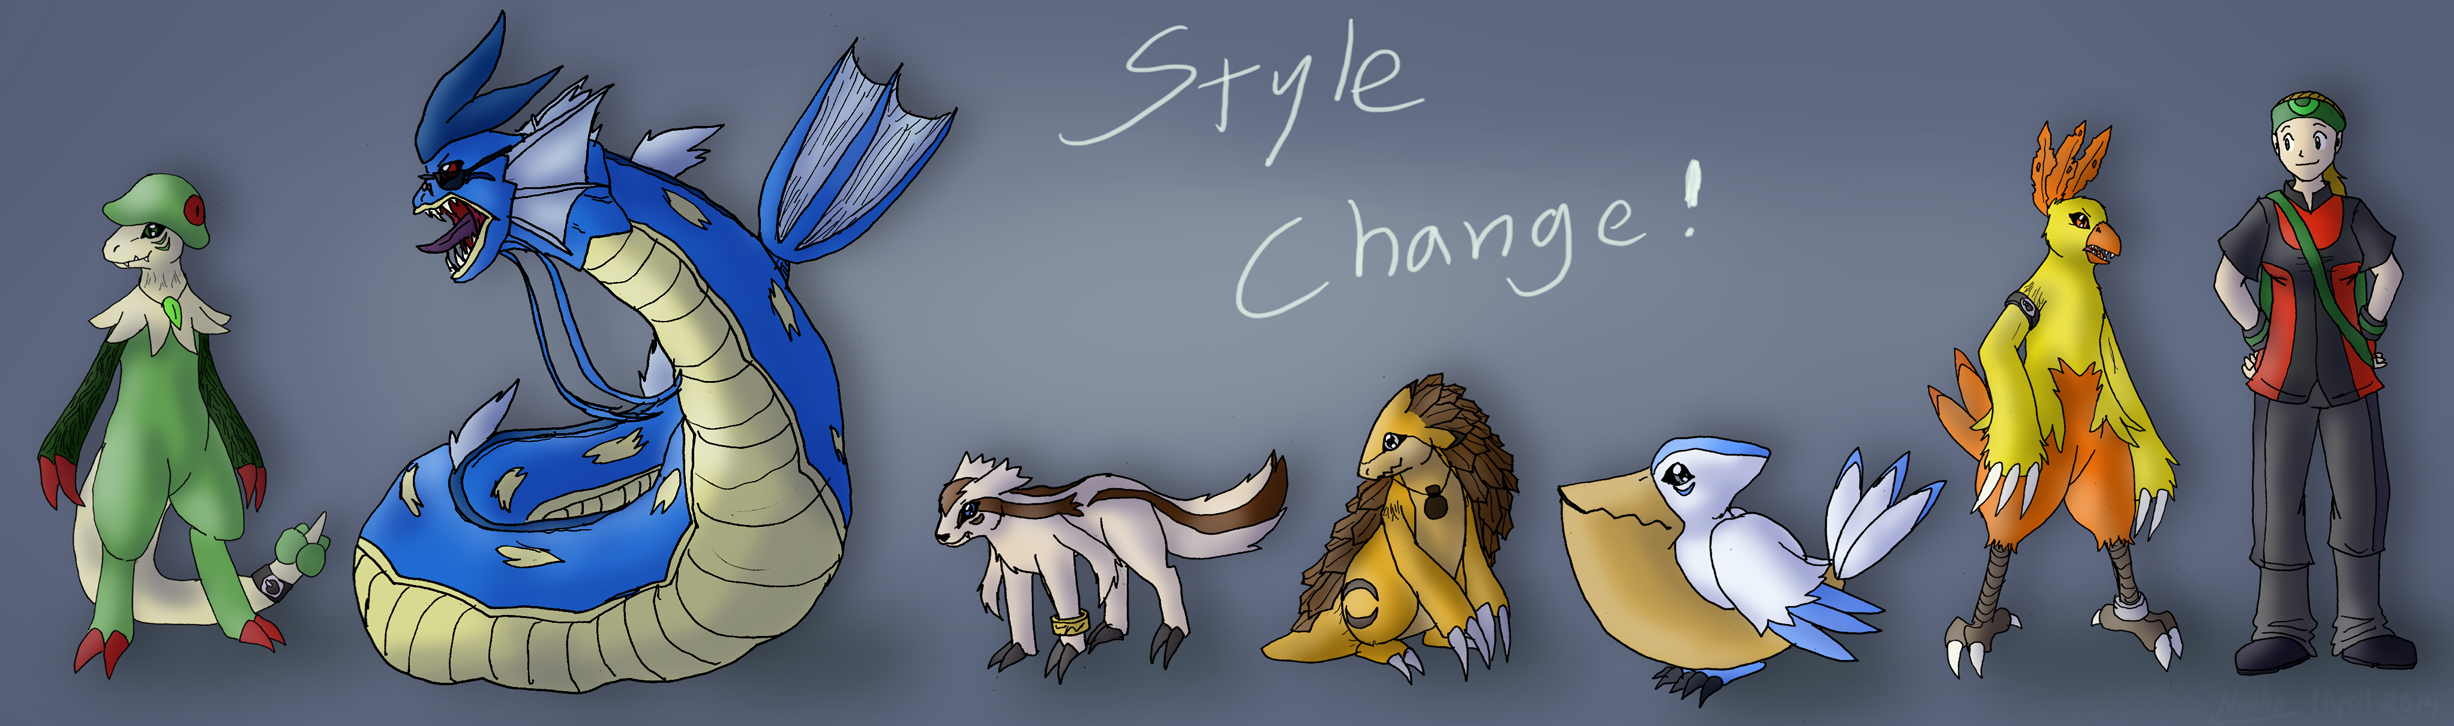 Announcement: Art Style Change! (April Fools 2014)